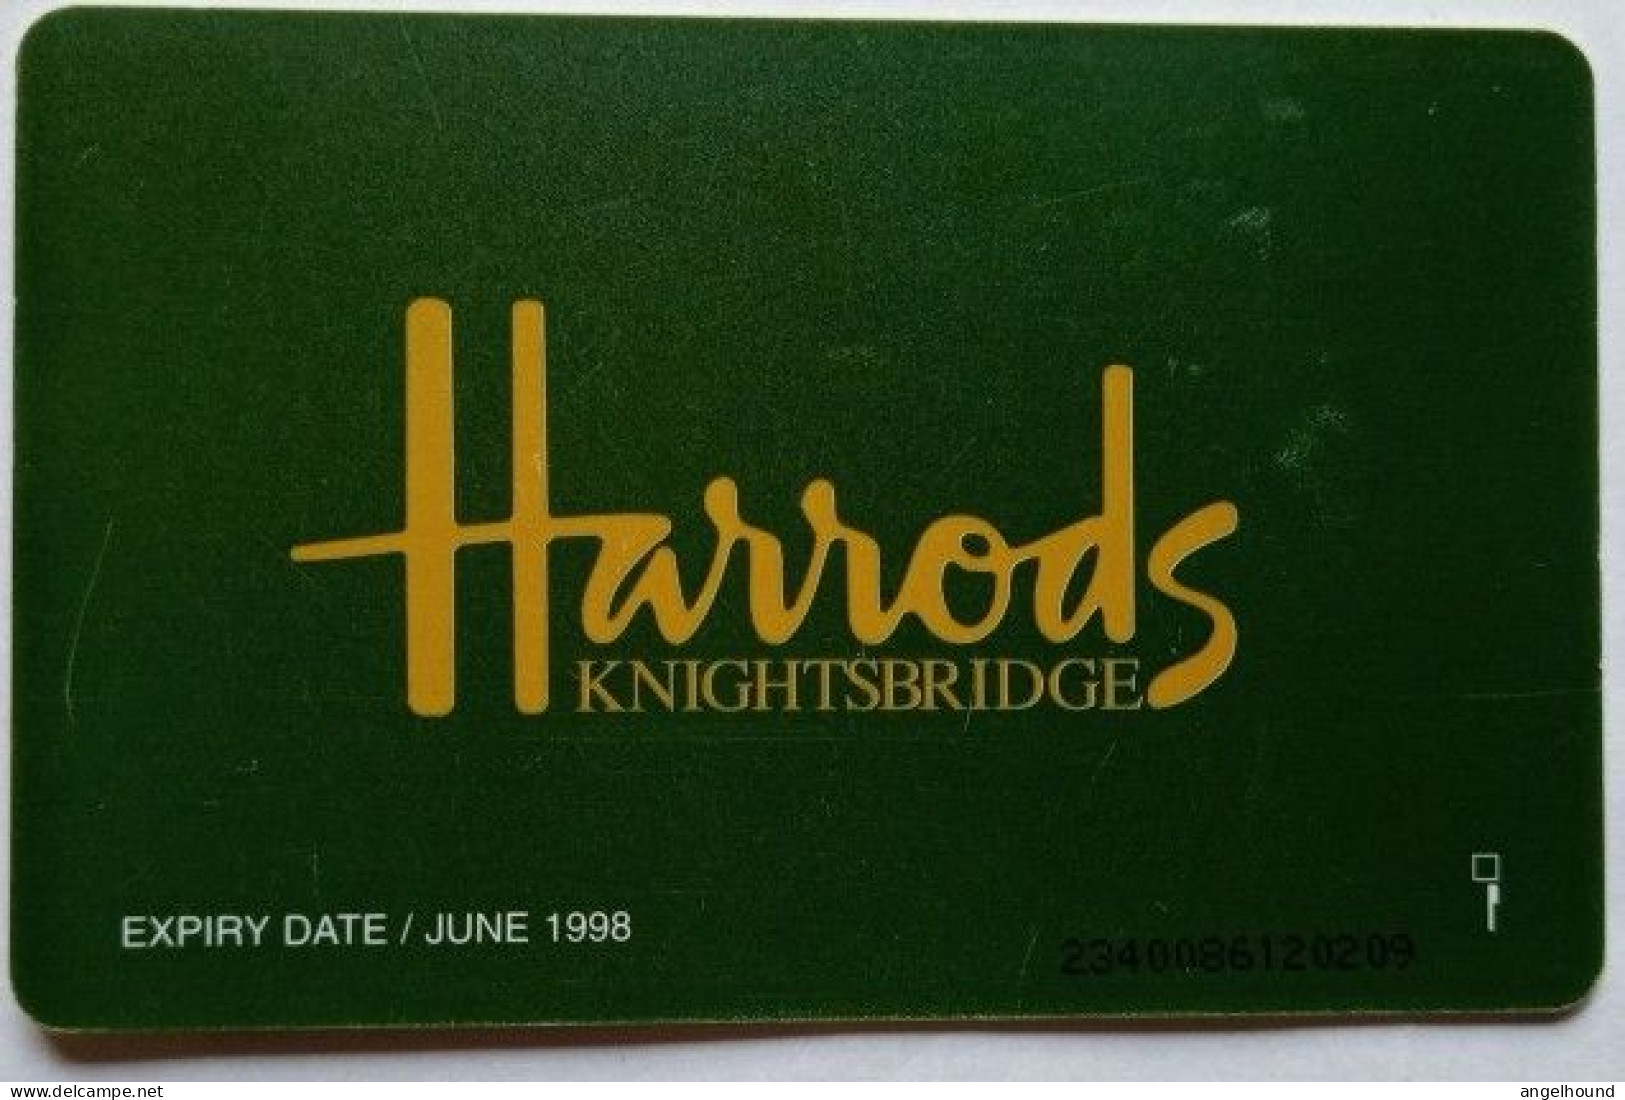 UK BT £2 Chip Card - Harrods - BT Werbezwecke